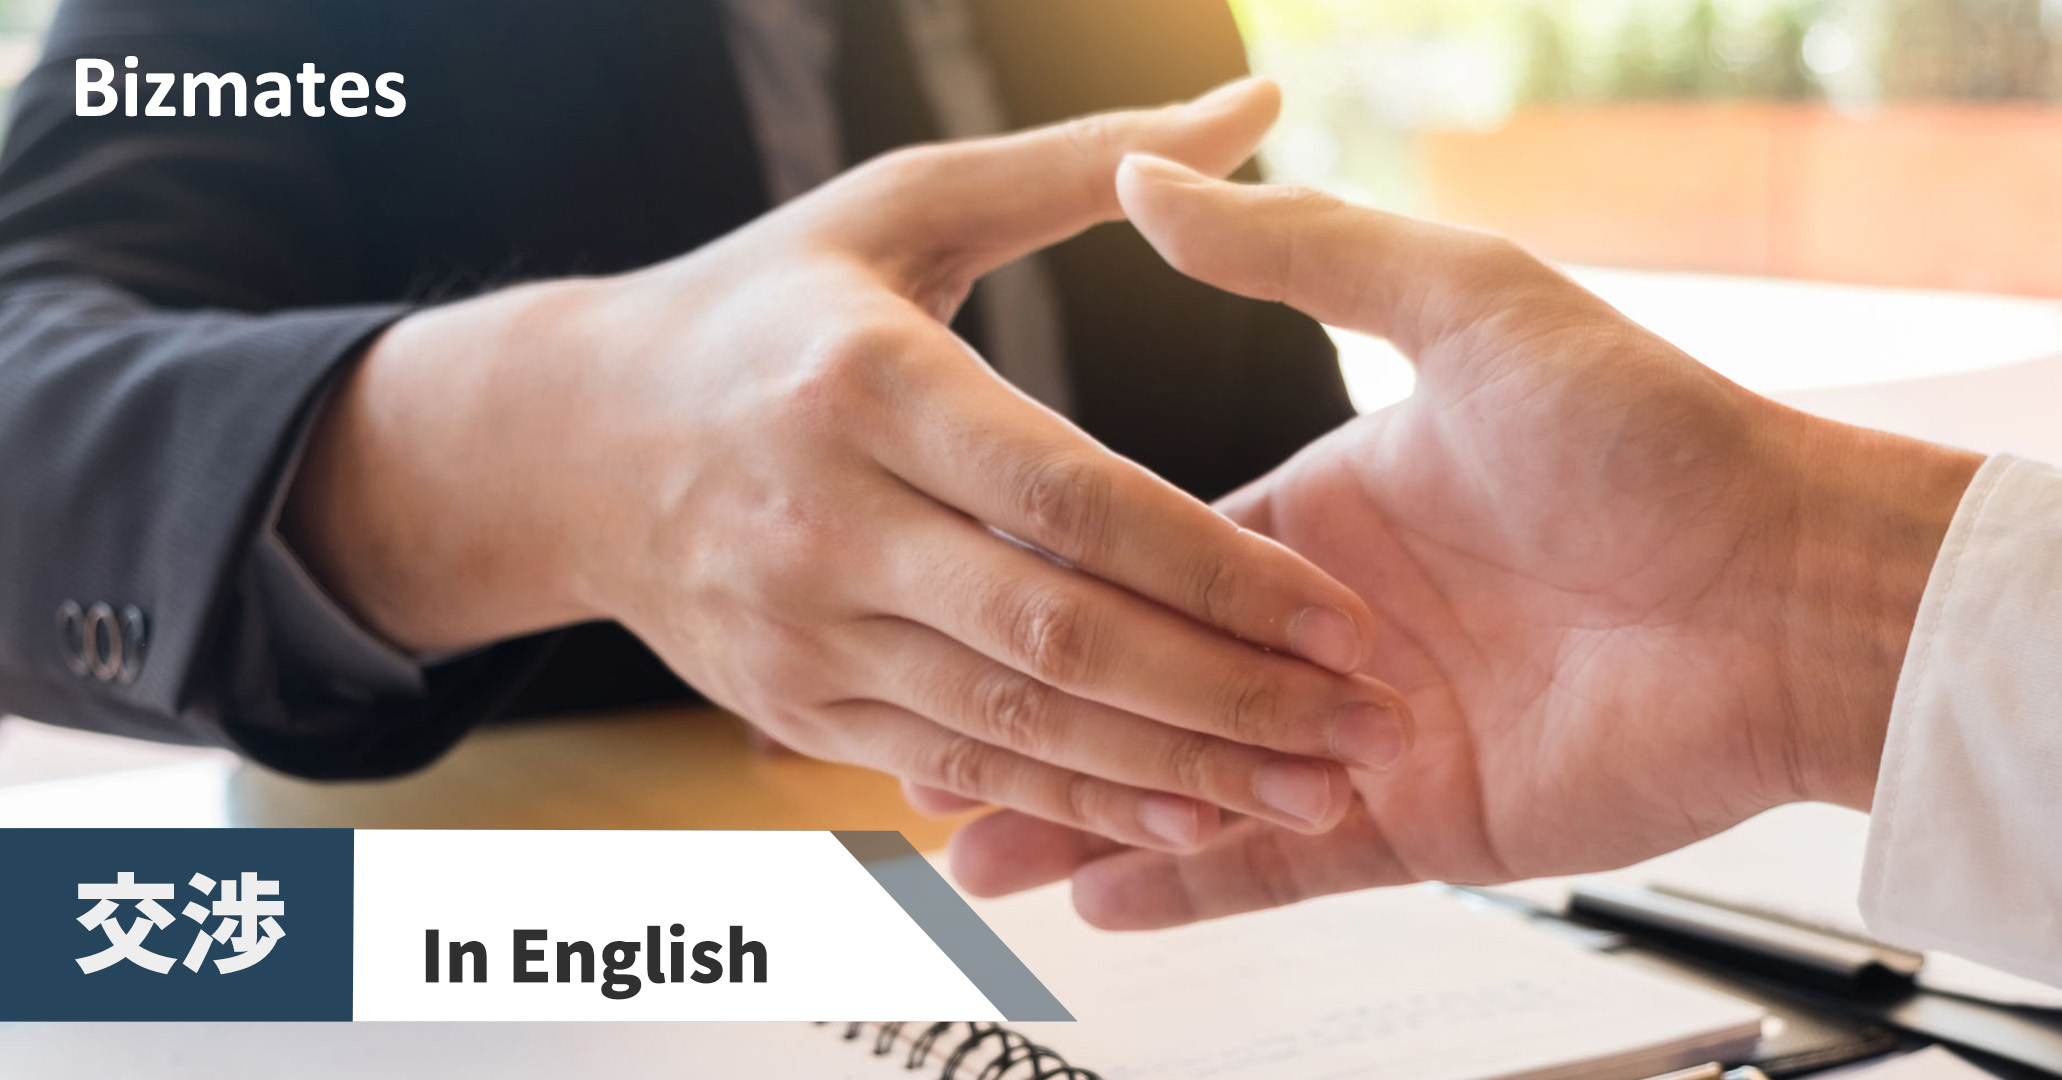 英語で 交渉 って何と言う ビジネス交渉する時の実践英語フレーズと例文 英語で暮らしと仕事が楽しくなるビズメイツブログ Bizmates Blog